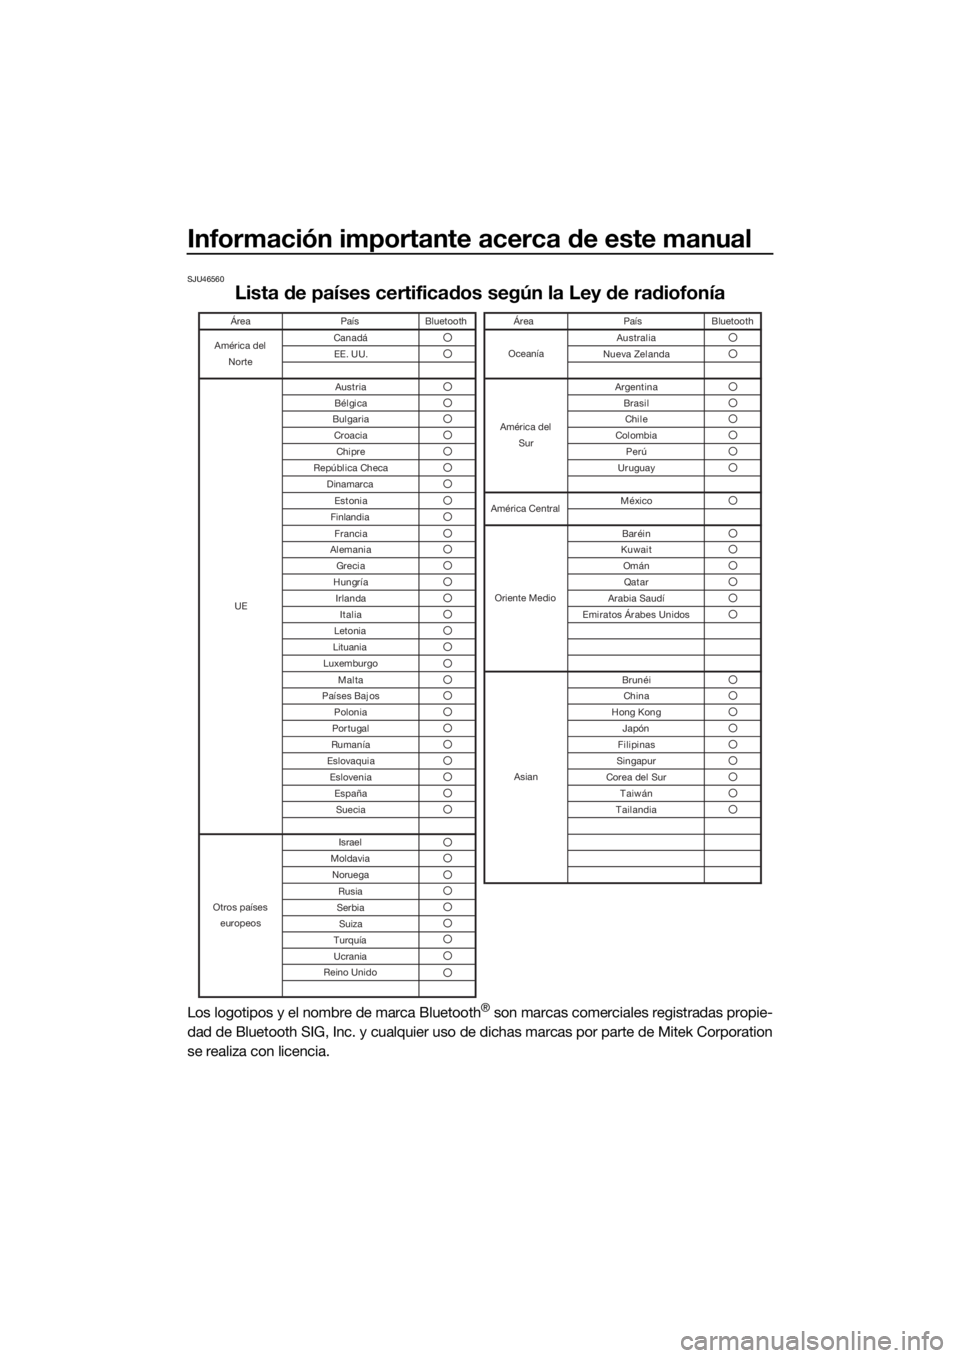 YAMAHA VX LIMITED 2022  Manuale de Empleo (in Spanish) Información importante acerca de este manual
SJU46560
Lista de países certificados según la Ley de radiofonía
Los logotipos y el nombre de marca Bluetooth® son marcas comerciales registradas prop